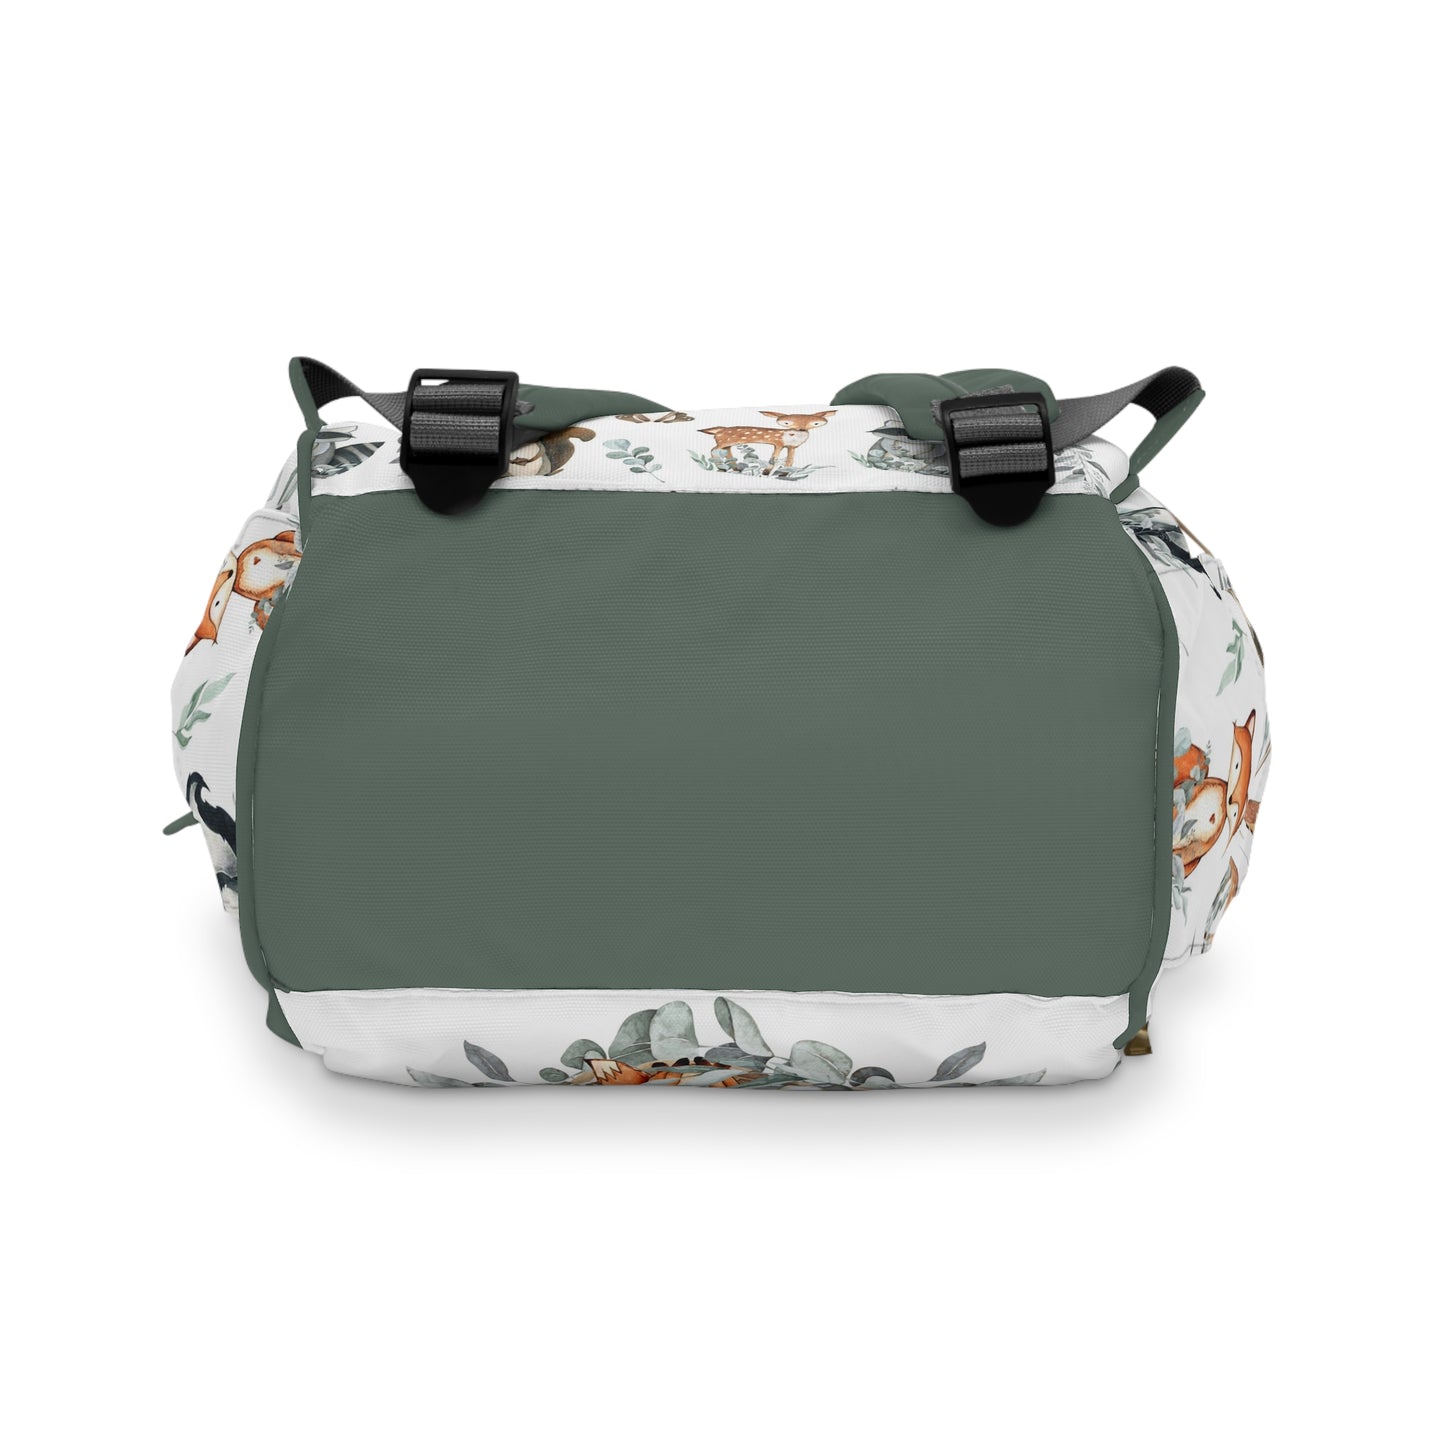 Woodland diaper bag, Greenery backpack - Greenery Woodland